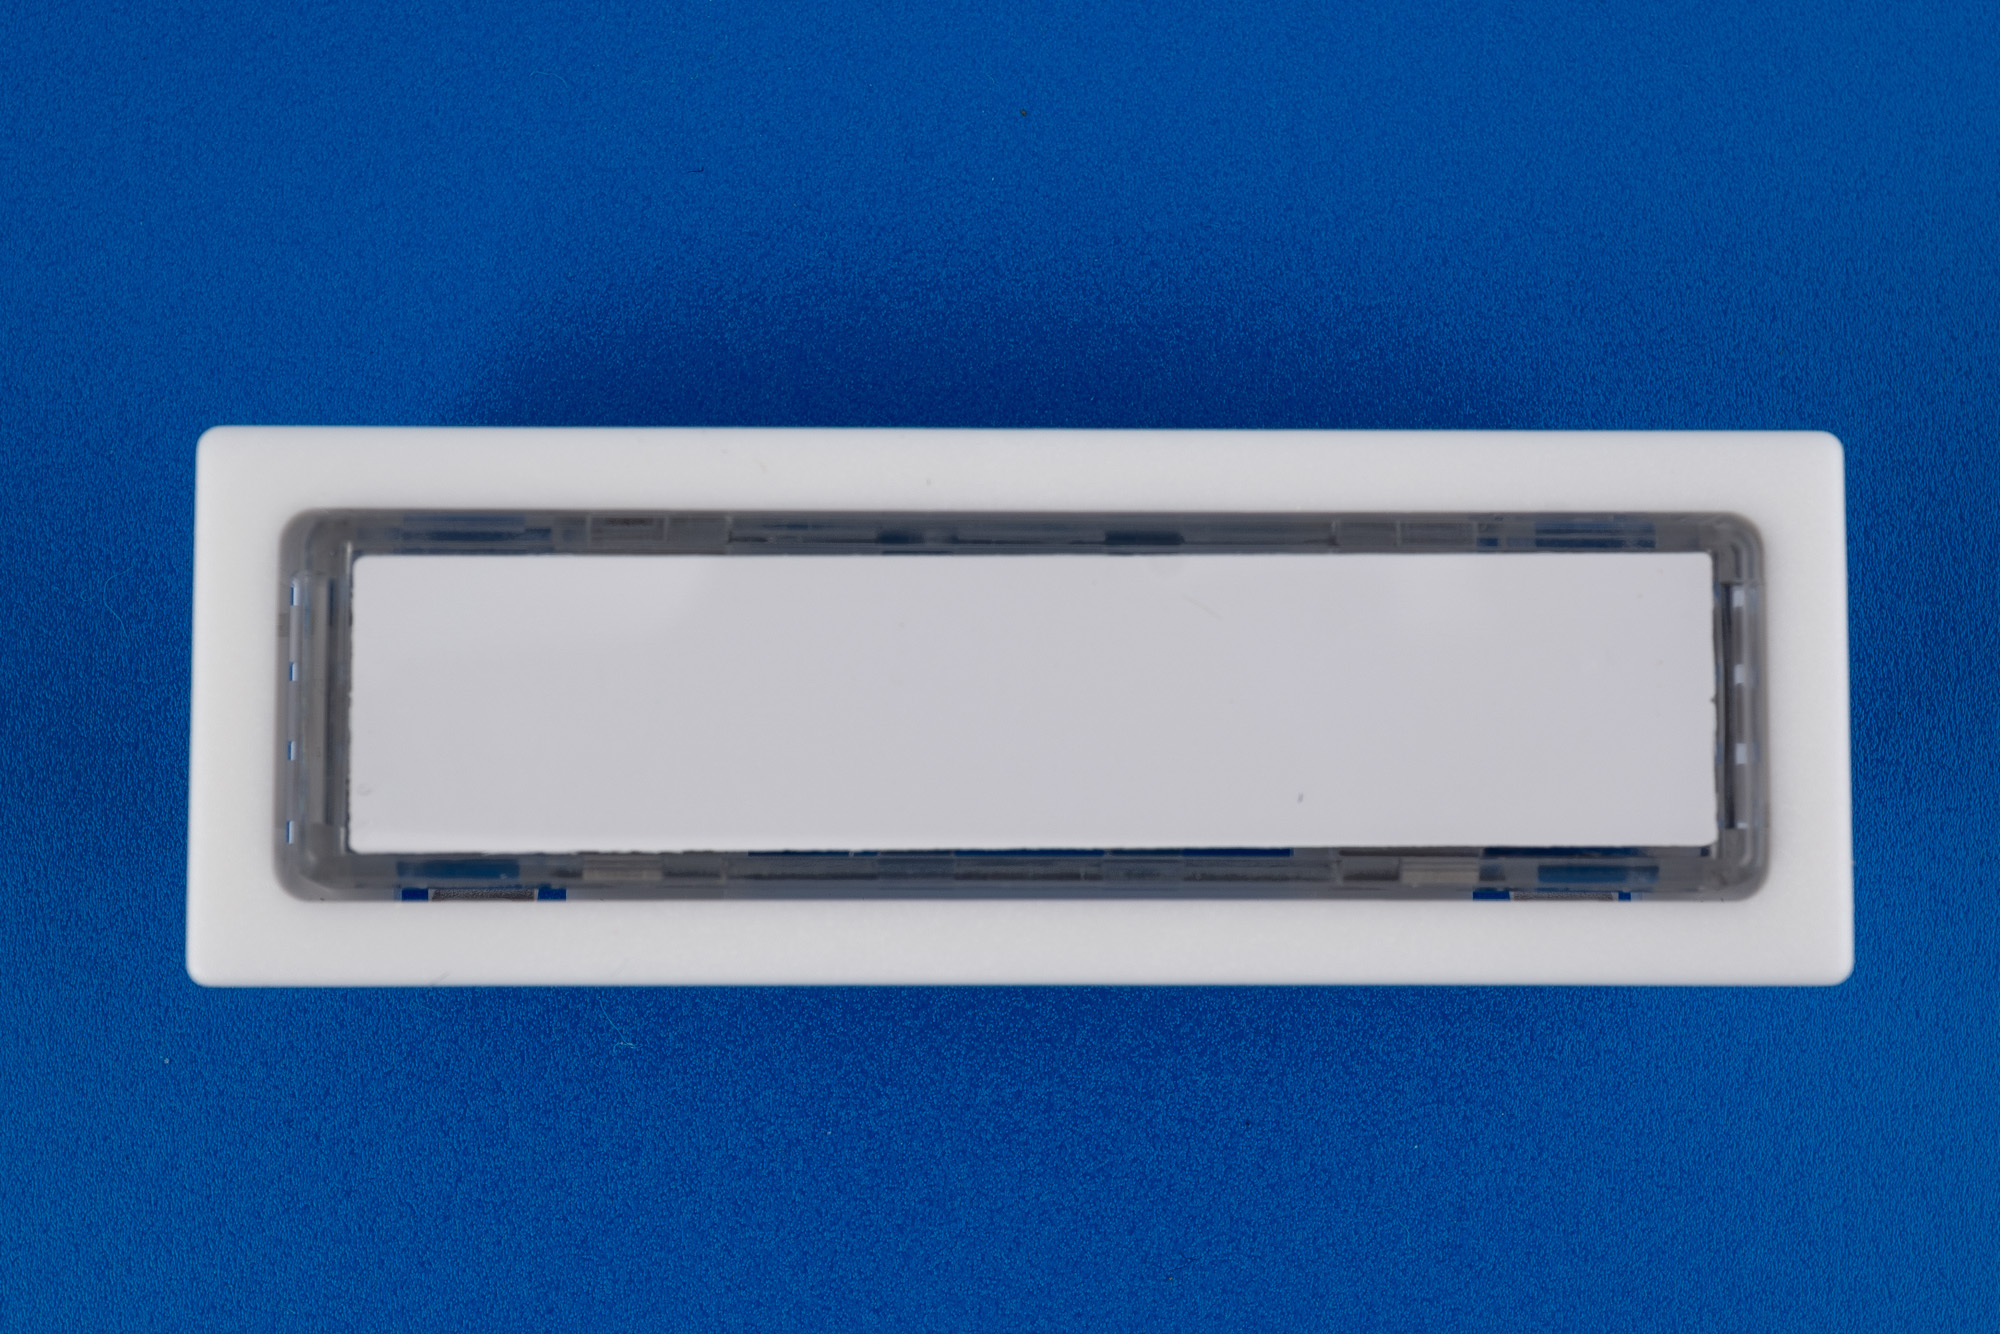 RENZ LIRA Kombitaster 65 x 22 mm 97-9-85116, Farbe weiß